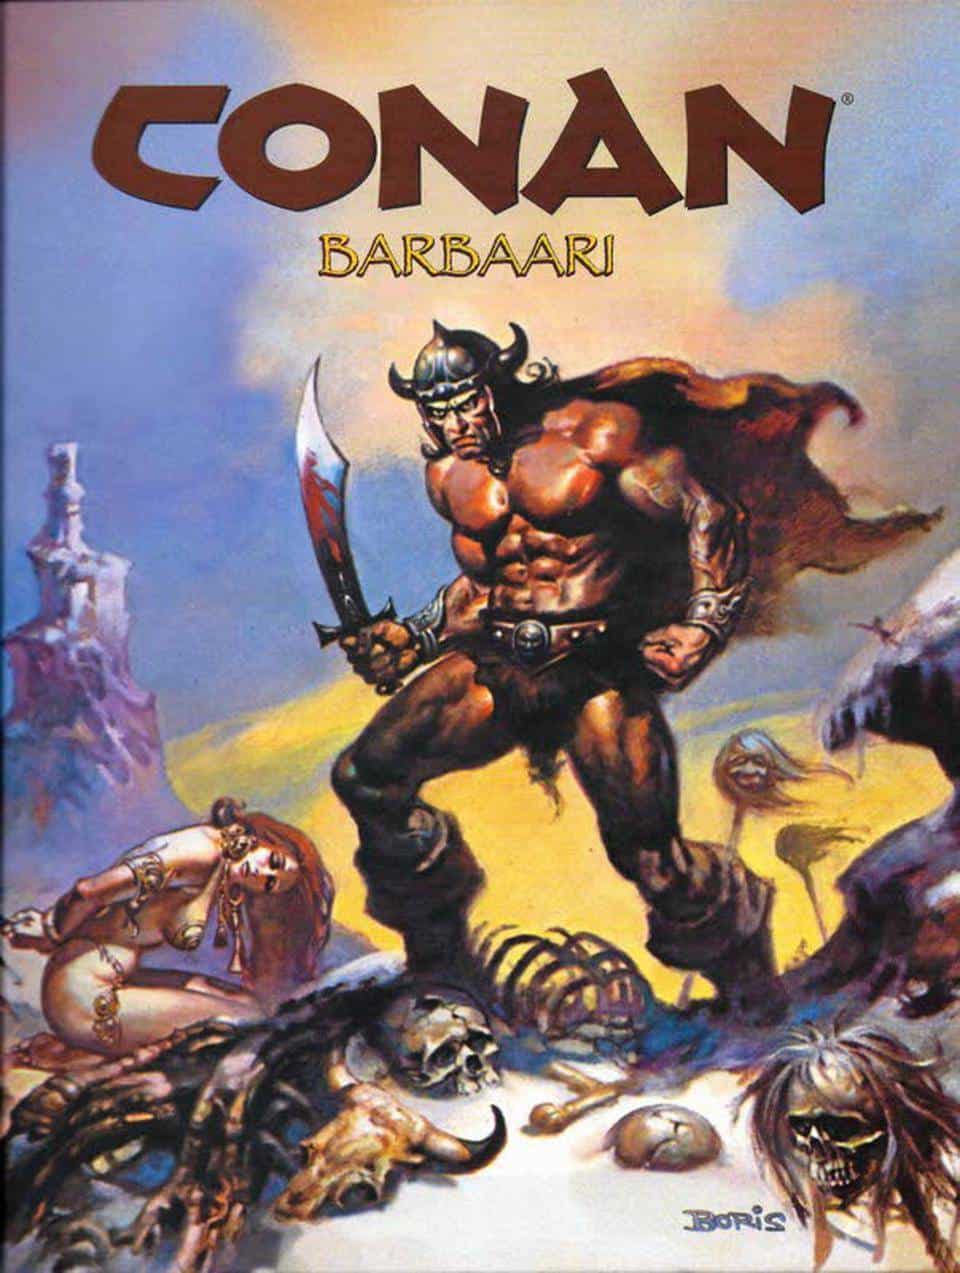 Conan Barbaari